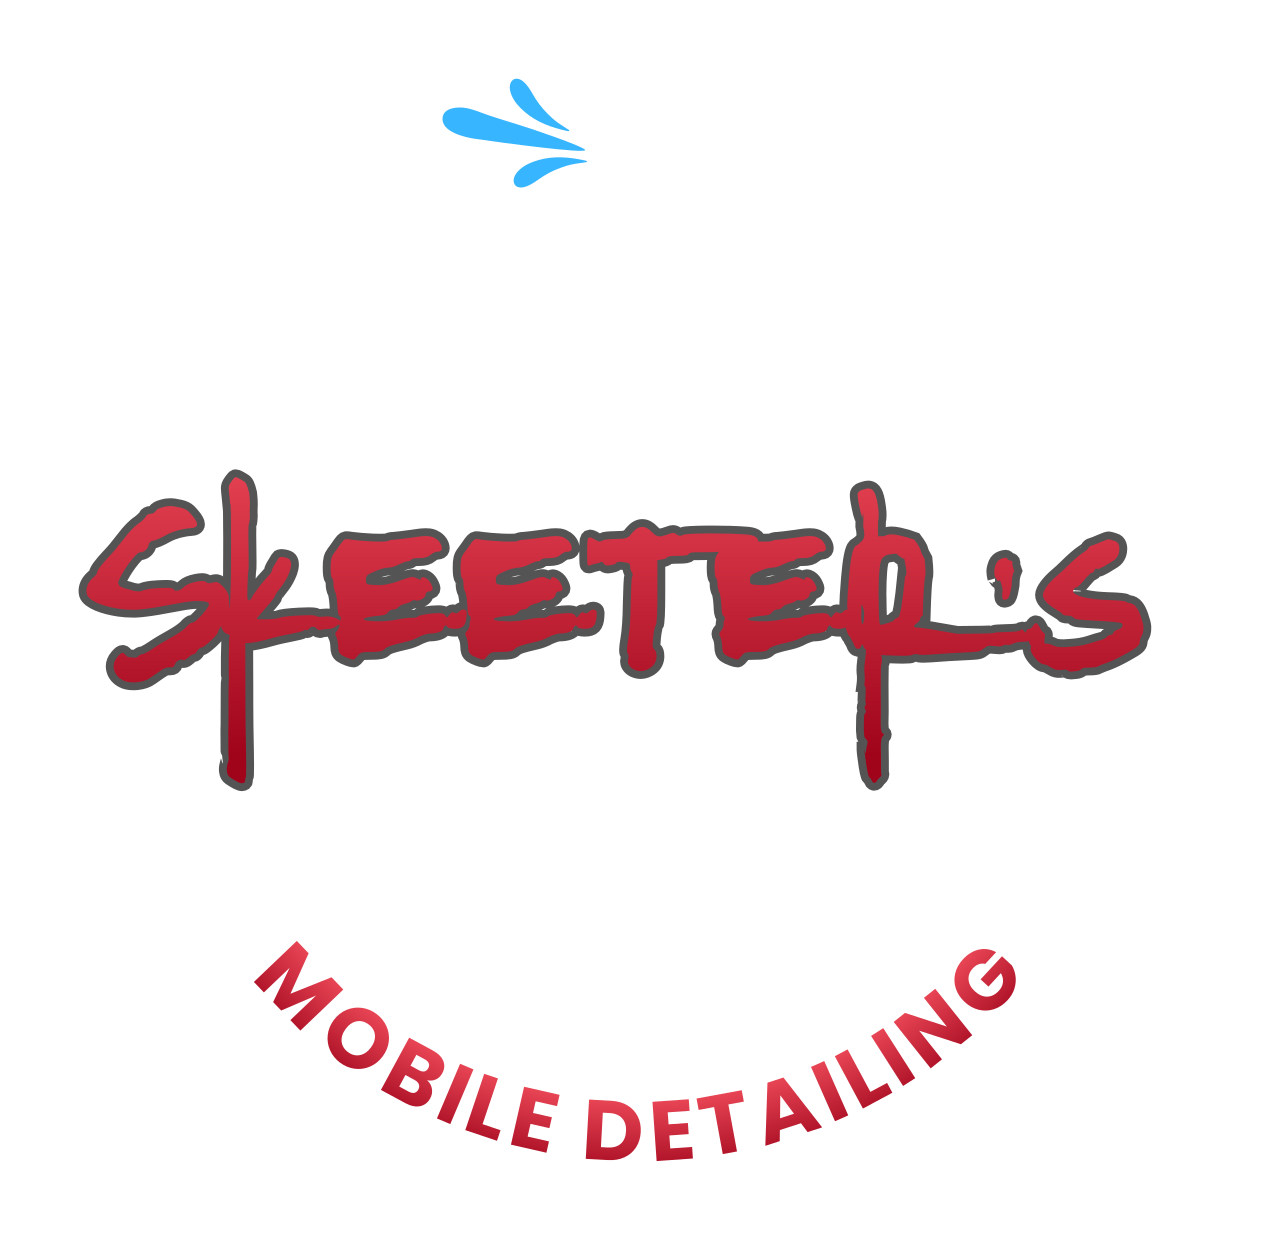 Skeeter's 's logo